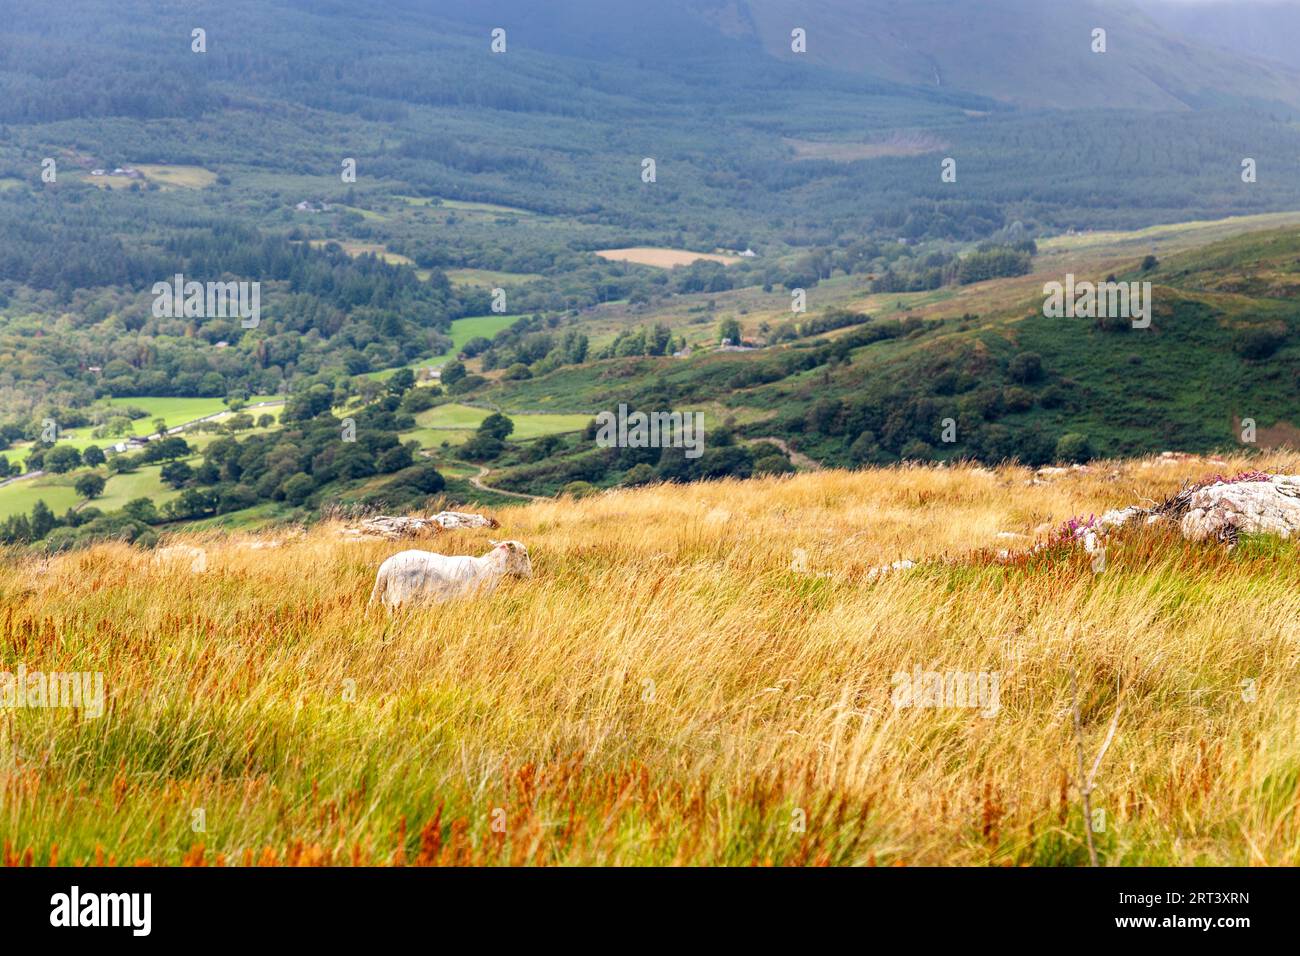 Ein Schaf weidet auf dem Mynydd Sygyn Mountain in der Nähe von Beddgelert, Snowdonia National Park, Wales, Vereinigtes Königreich Stockfoto